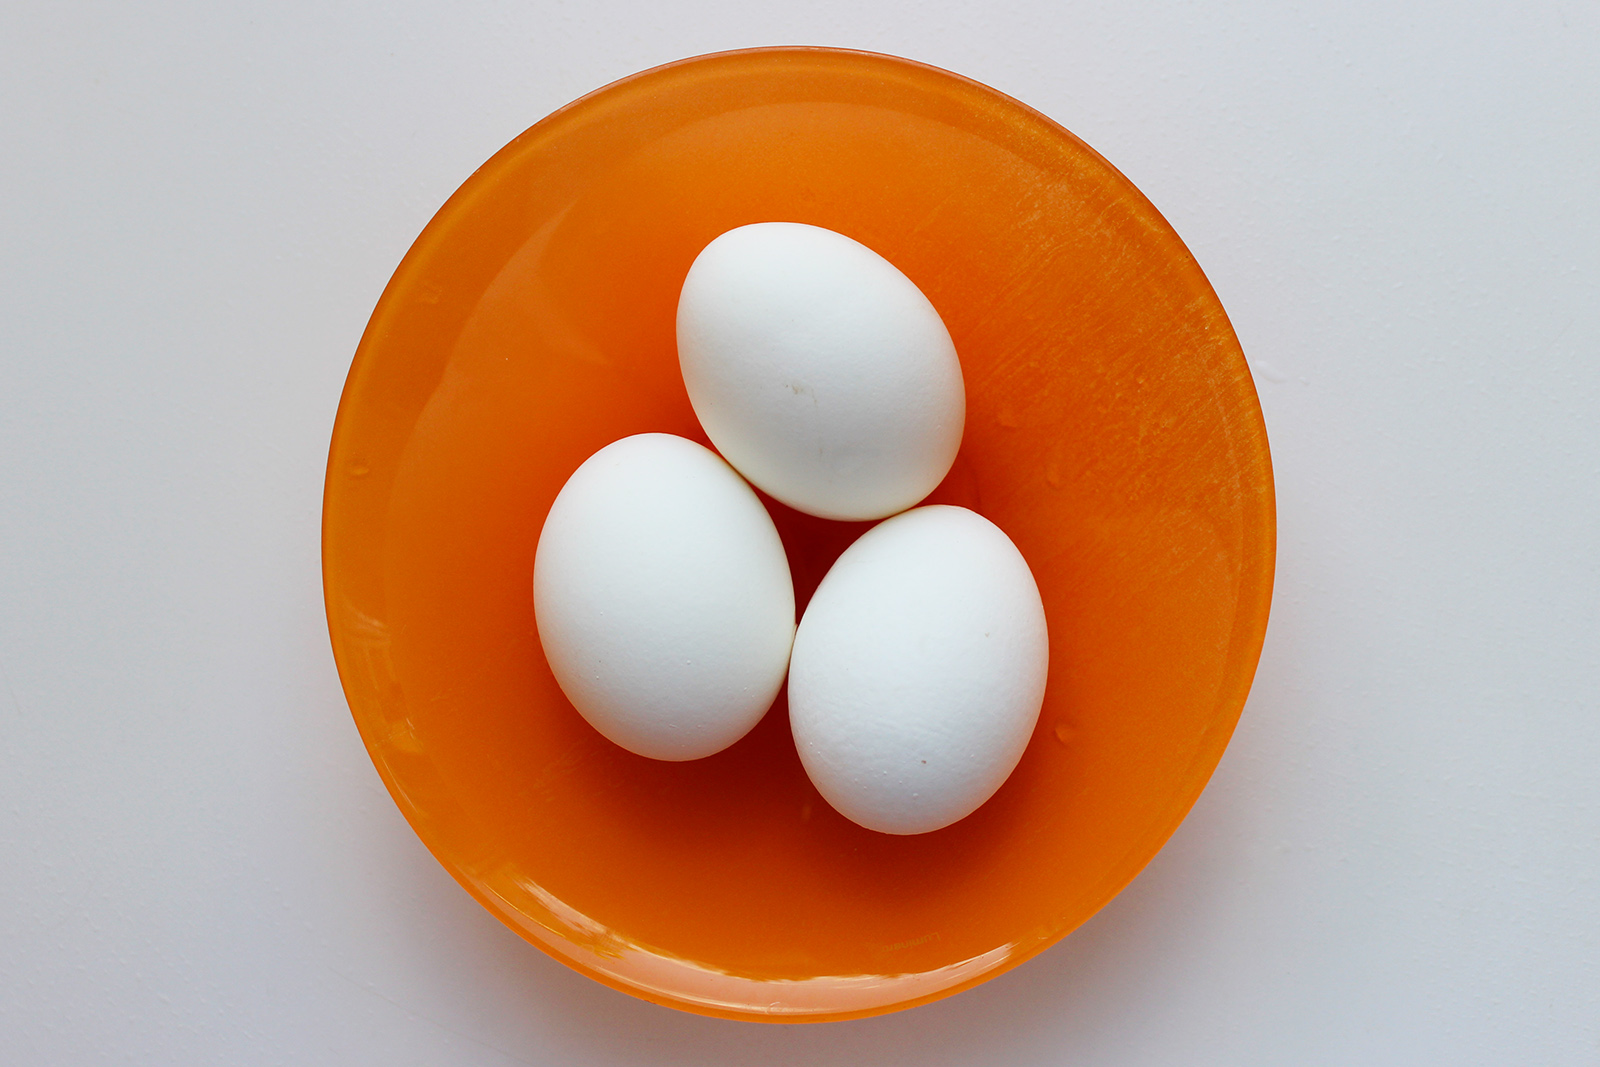 Сваренные вкрутую яйца не только дадут дополнительную текстуру и вкус, но и придадут блюду более нарядный вид